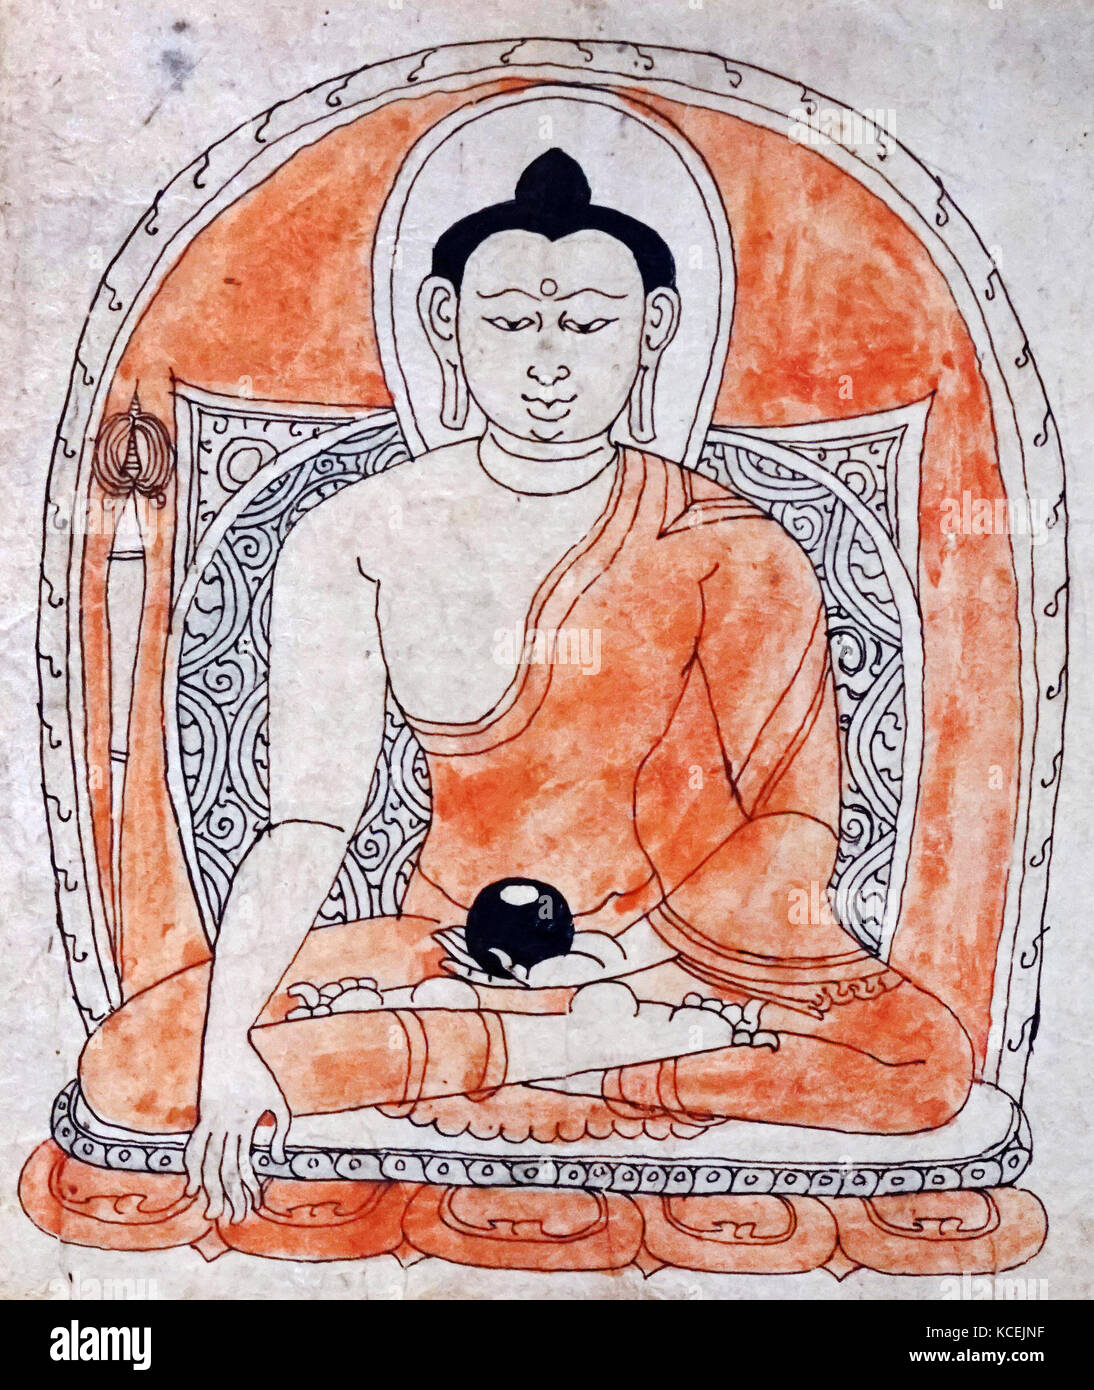 Consacrazione disegno raffigurante il Gautama Buddha, noto anche come Siddharta Gautama, Buddha Shakyamuni, su cui gli insegnamenti del buddismo è stata fondata., 1450-1600 annuncio. disegnato in uno stile Nepalese. Carta, inchiostro e acquerello del Tibet Foto Stock